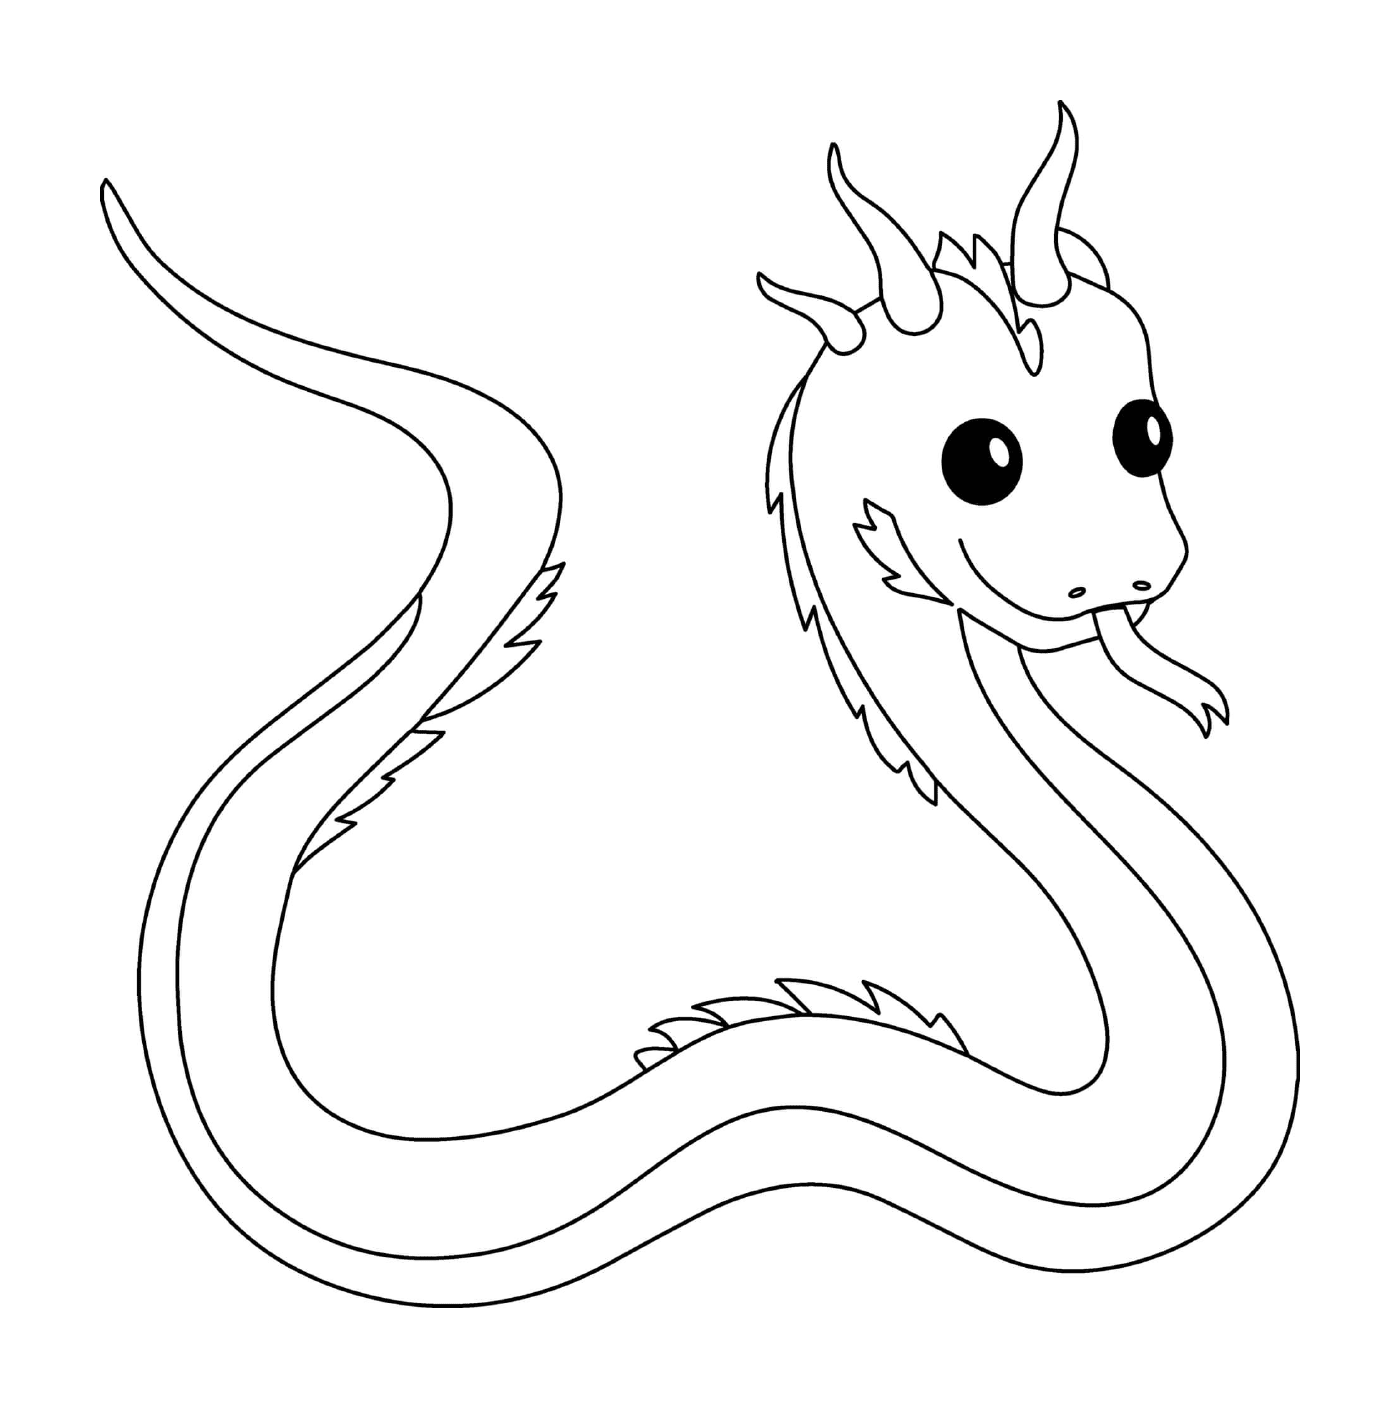  Basilico leggendario rettile bestia, piccolo serpente con veleno mortale 